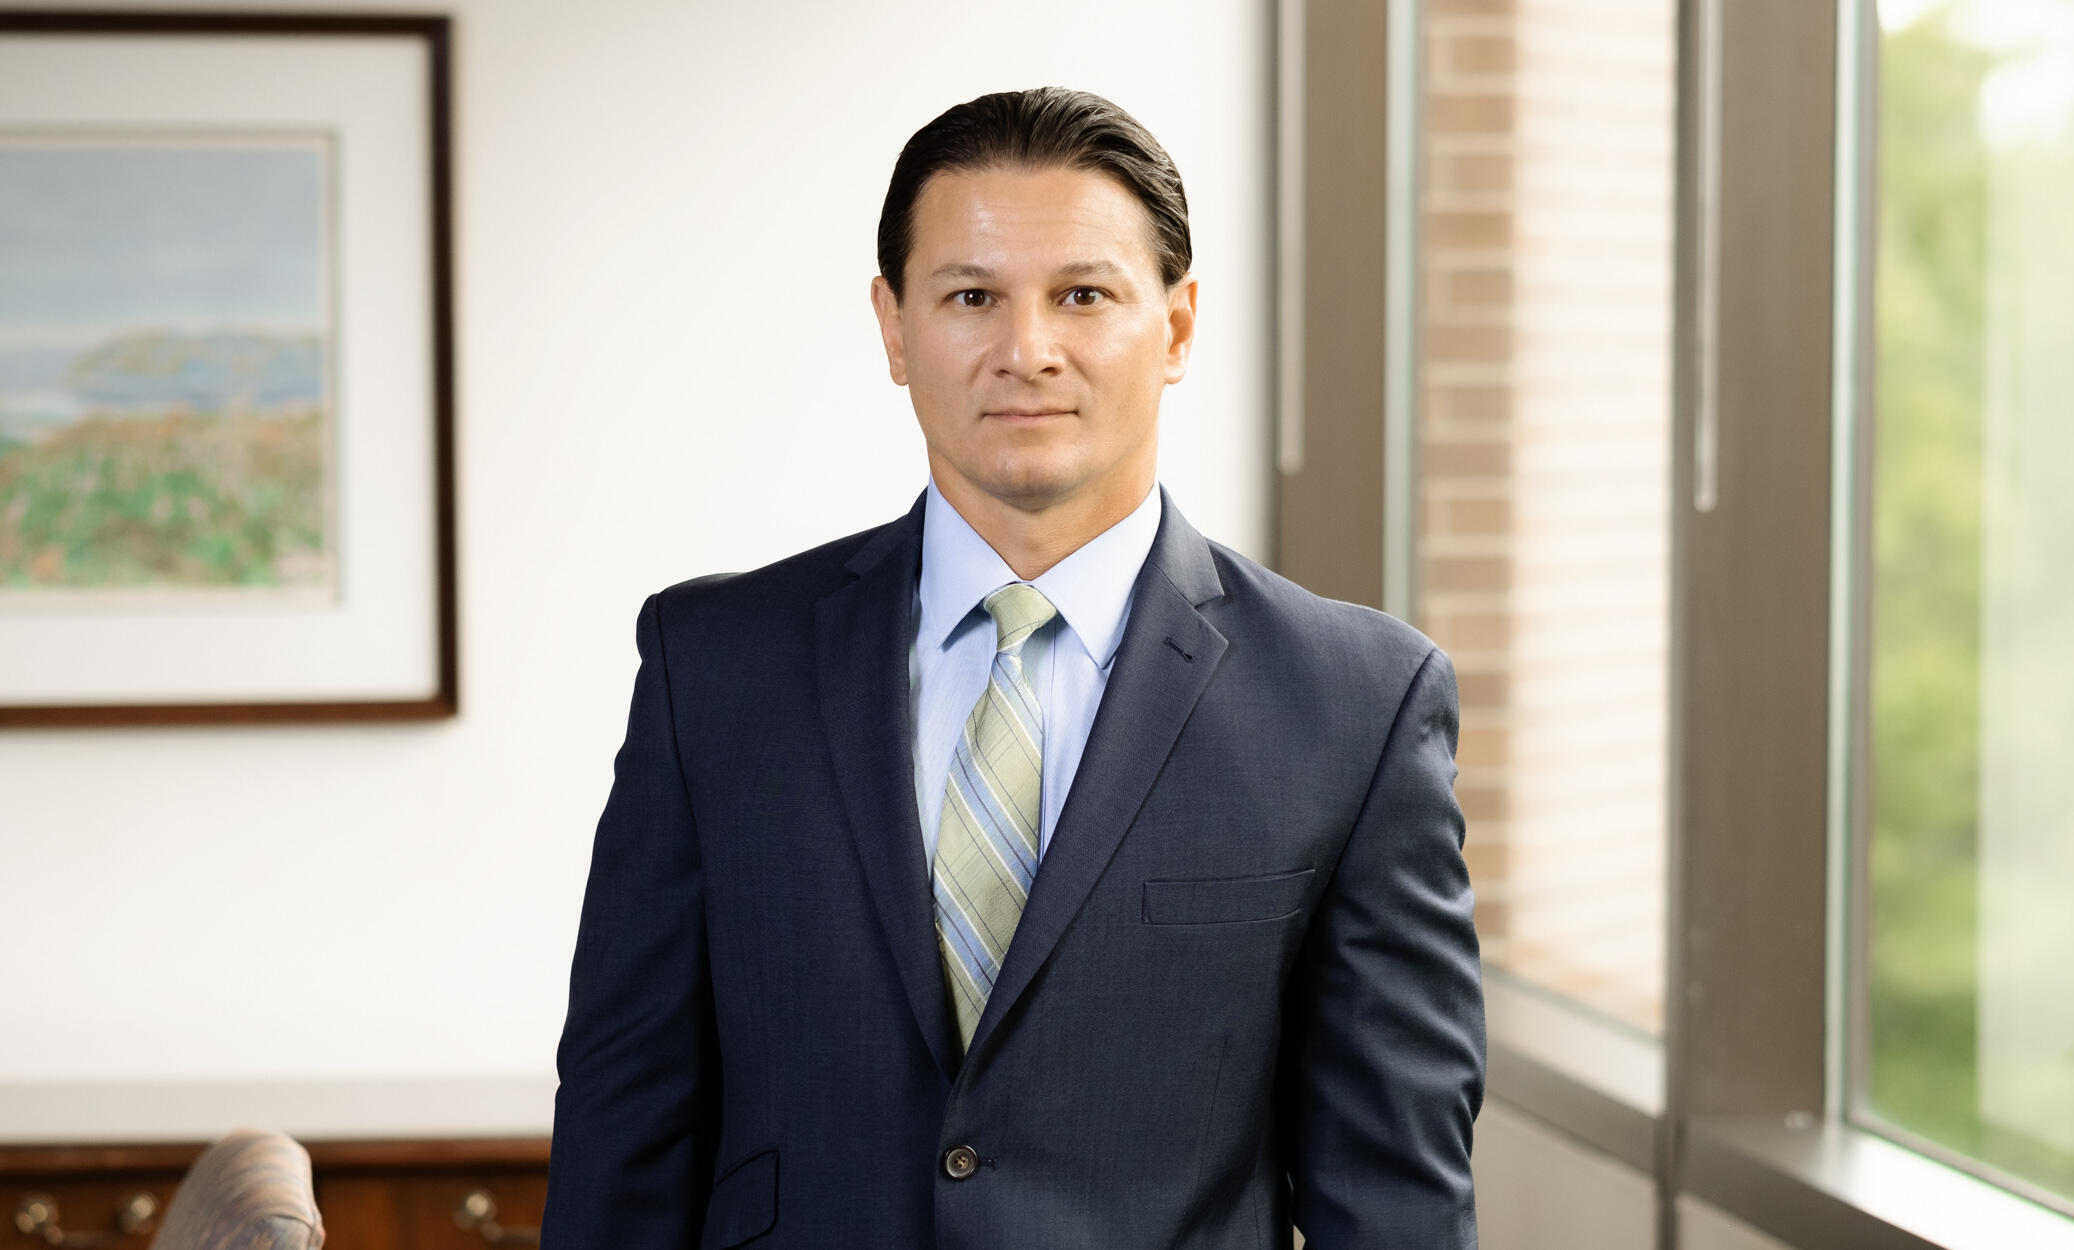 William N. Aumenta - Foreclosure Defense Attorney